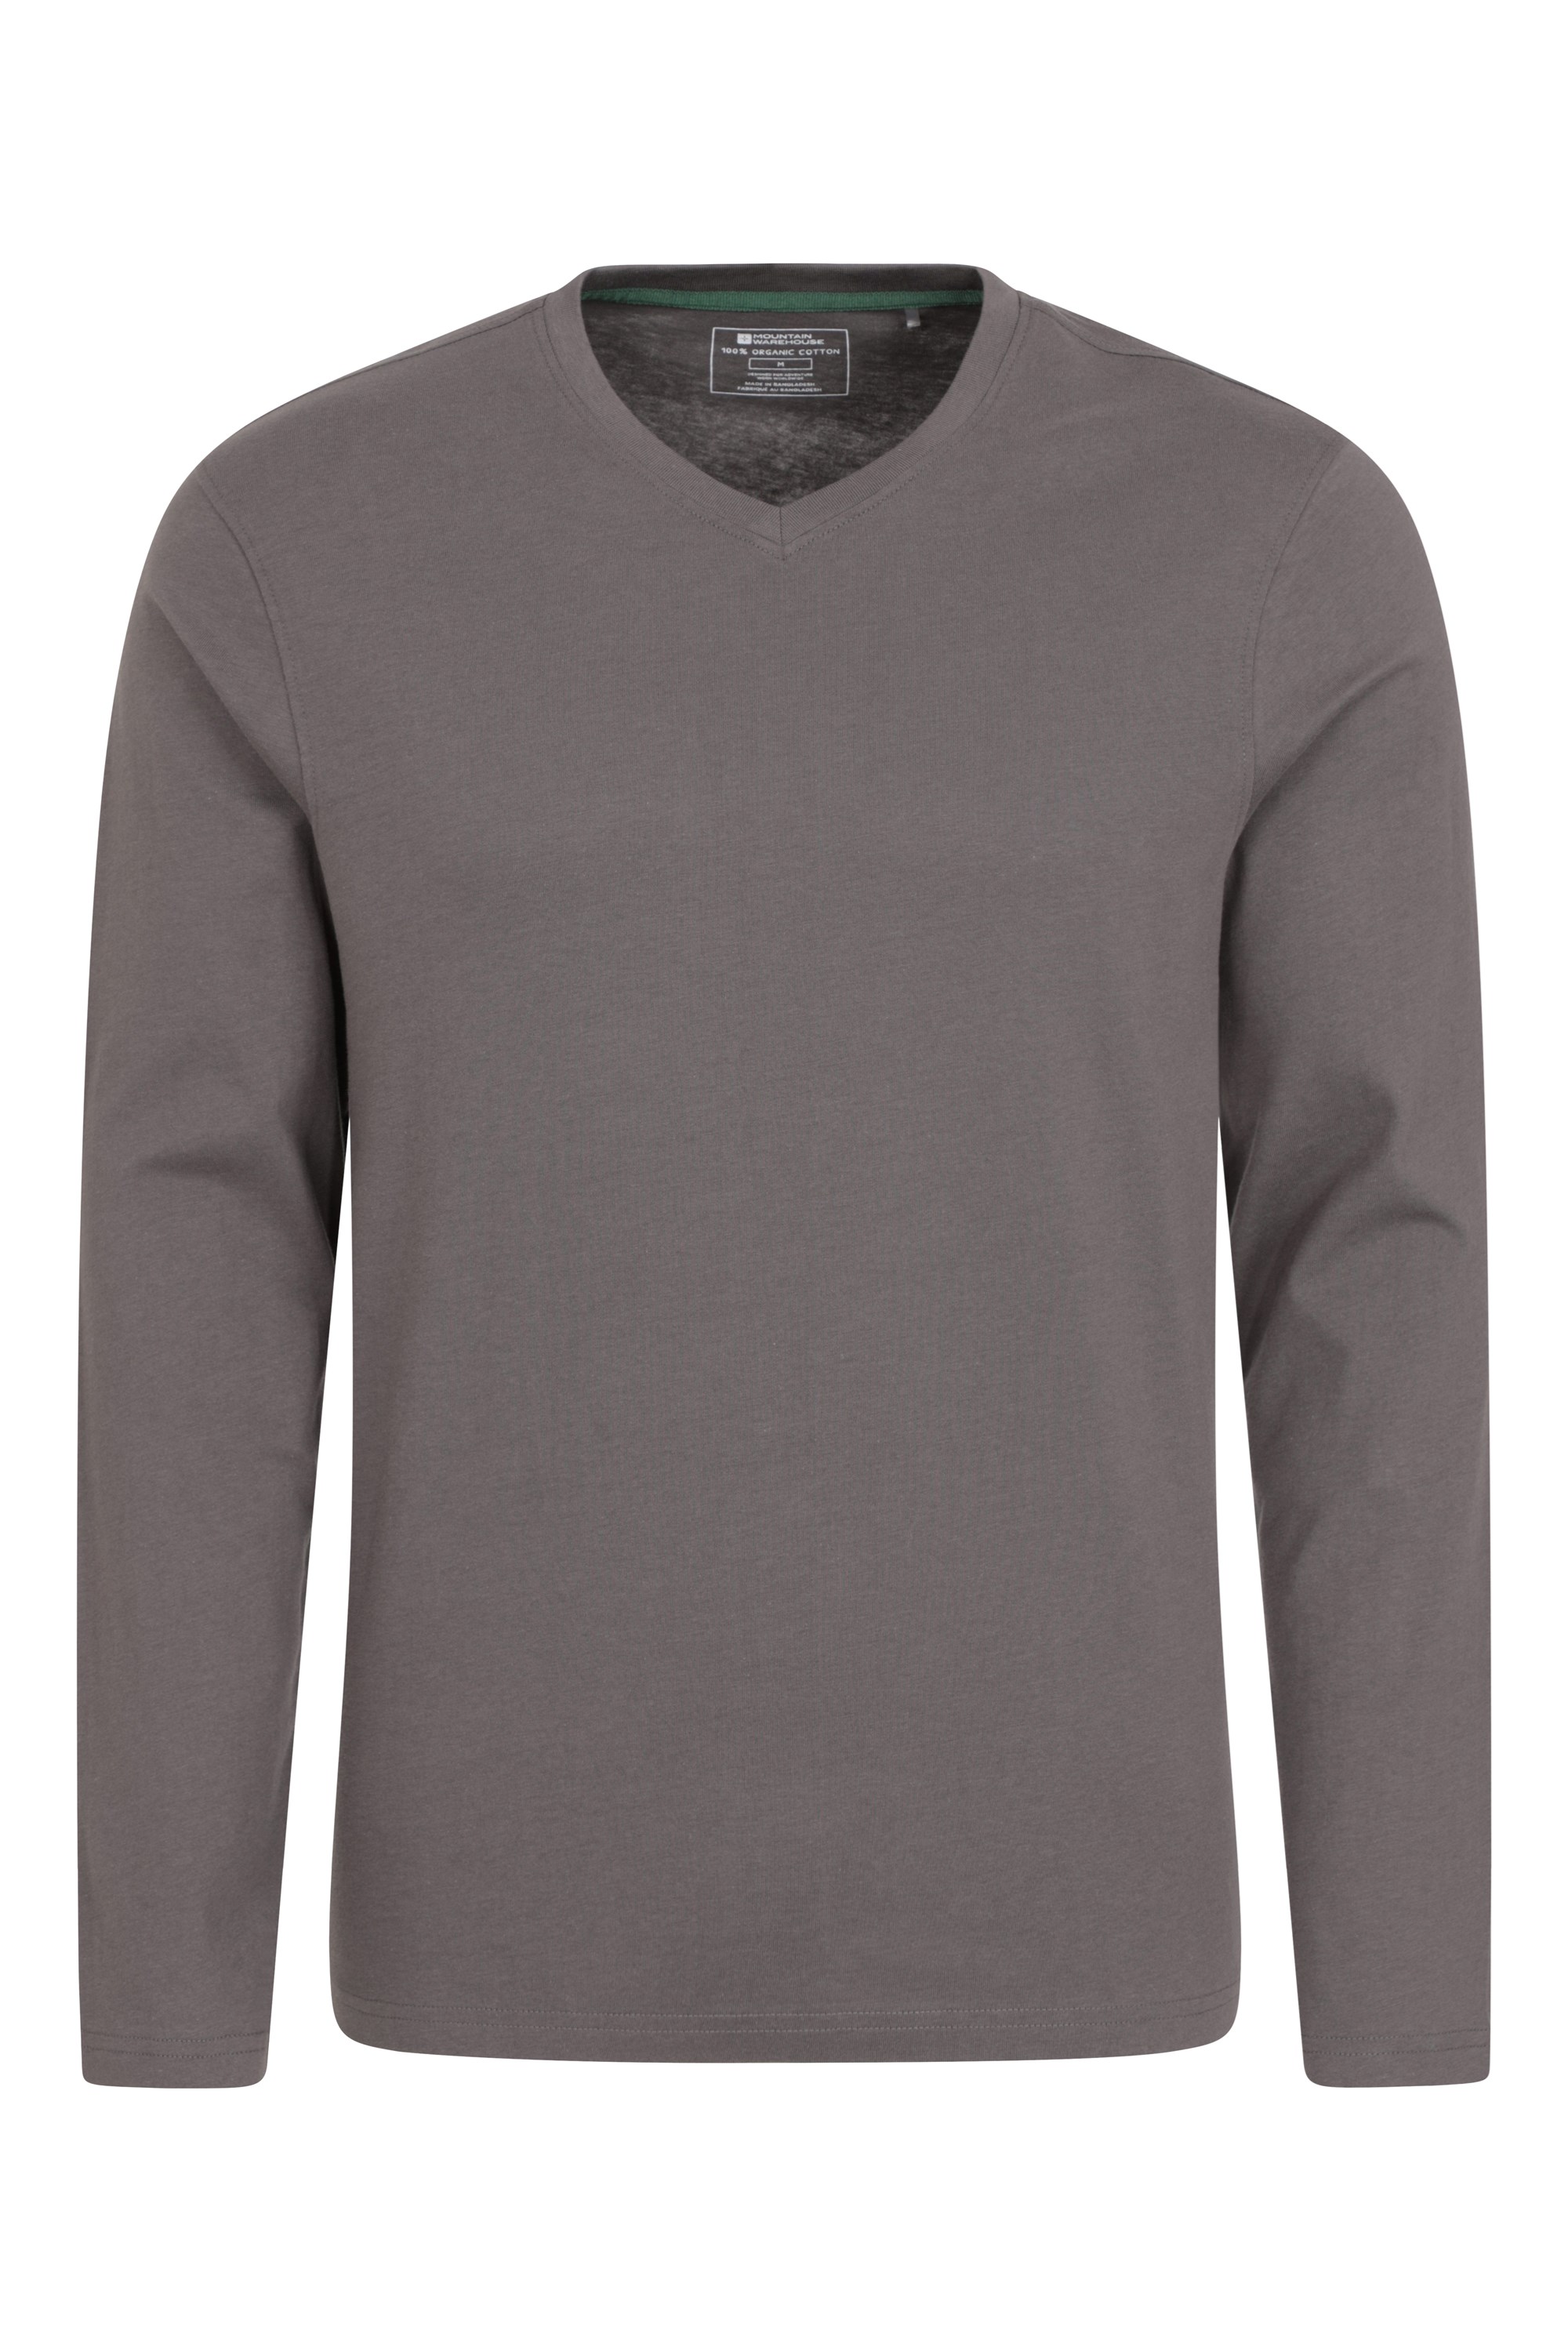 Eden - koszulka męska z dekoltem w szpic z bawełny organicznej - Grey